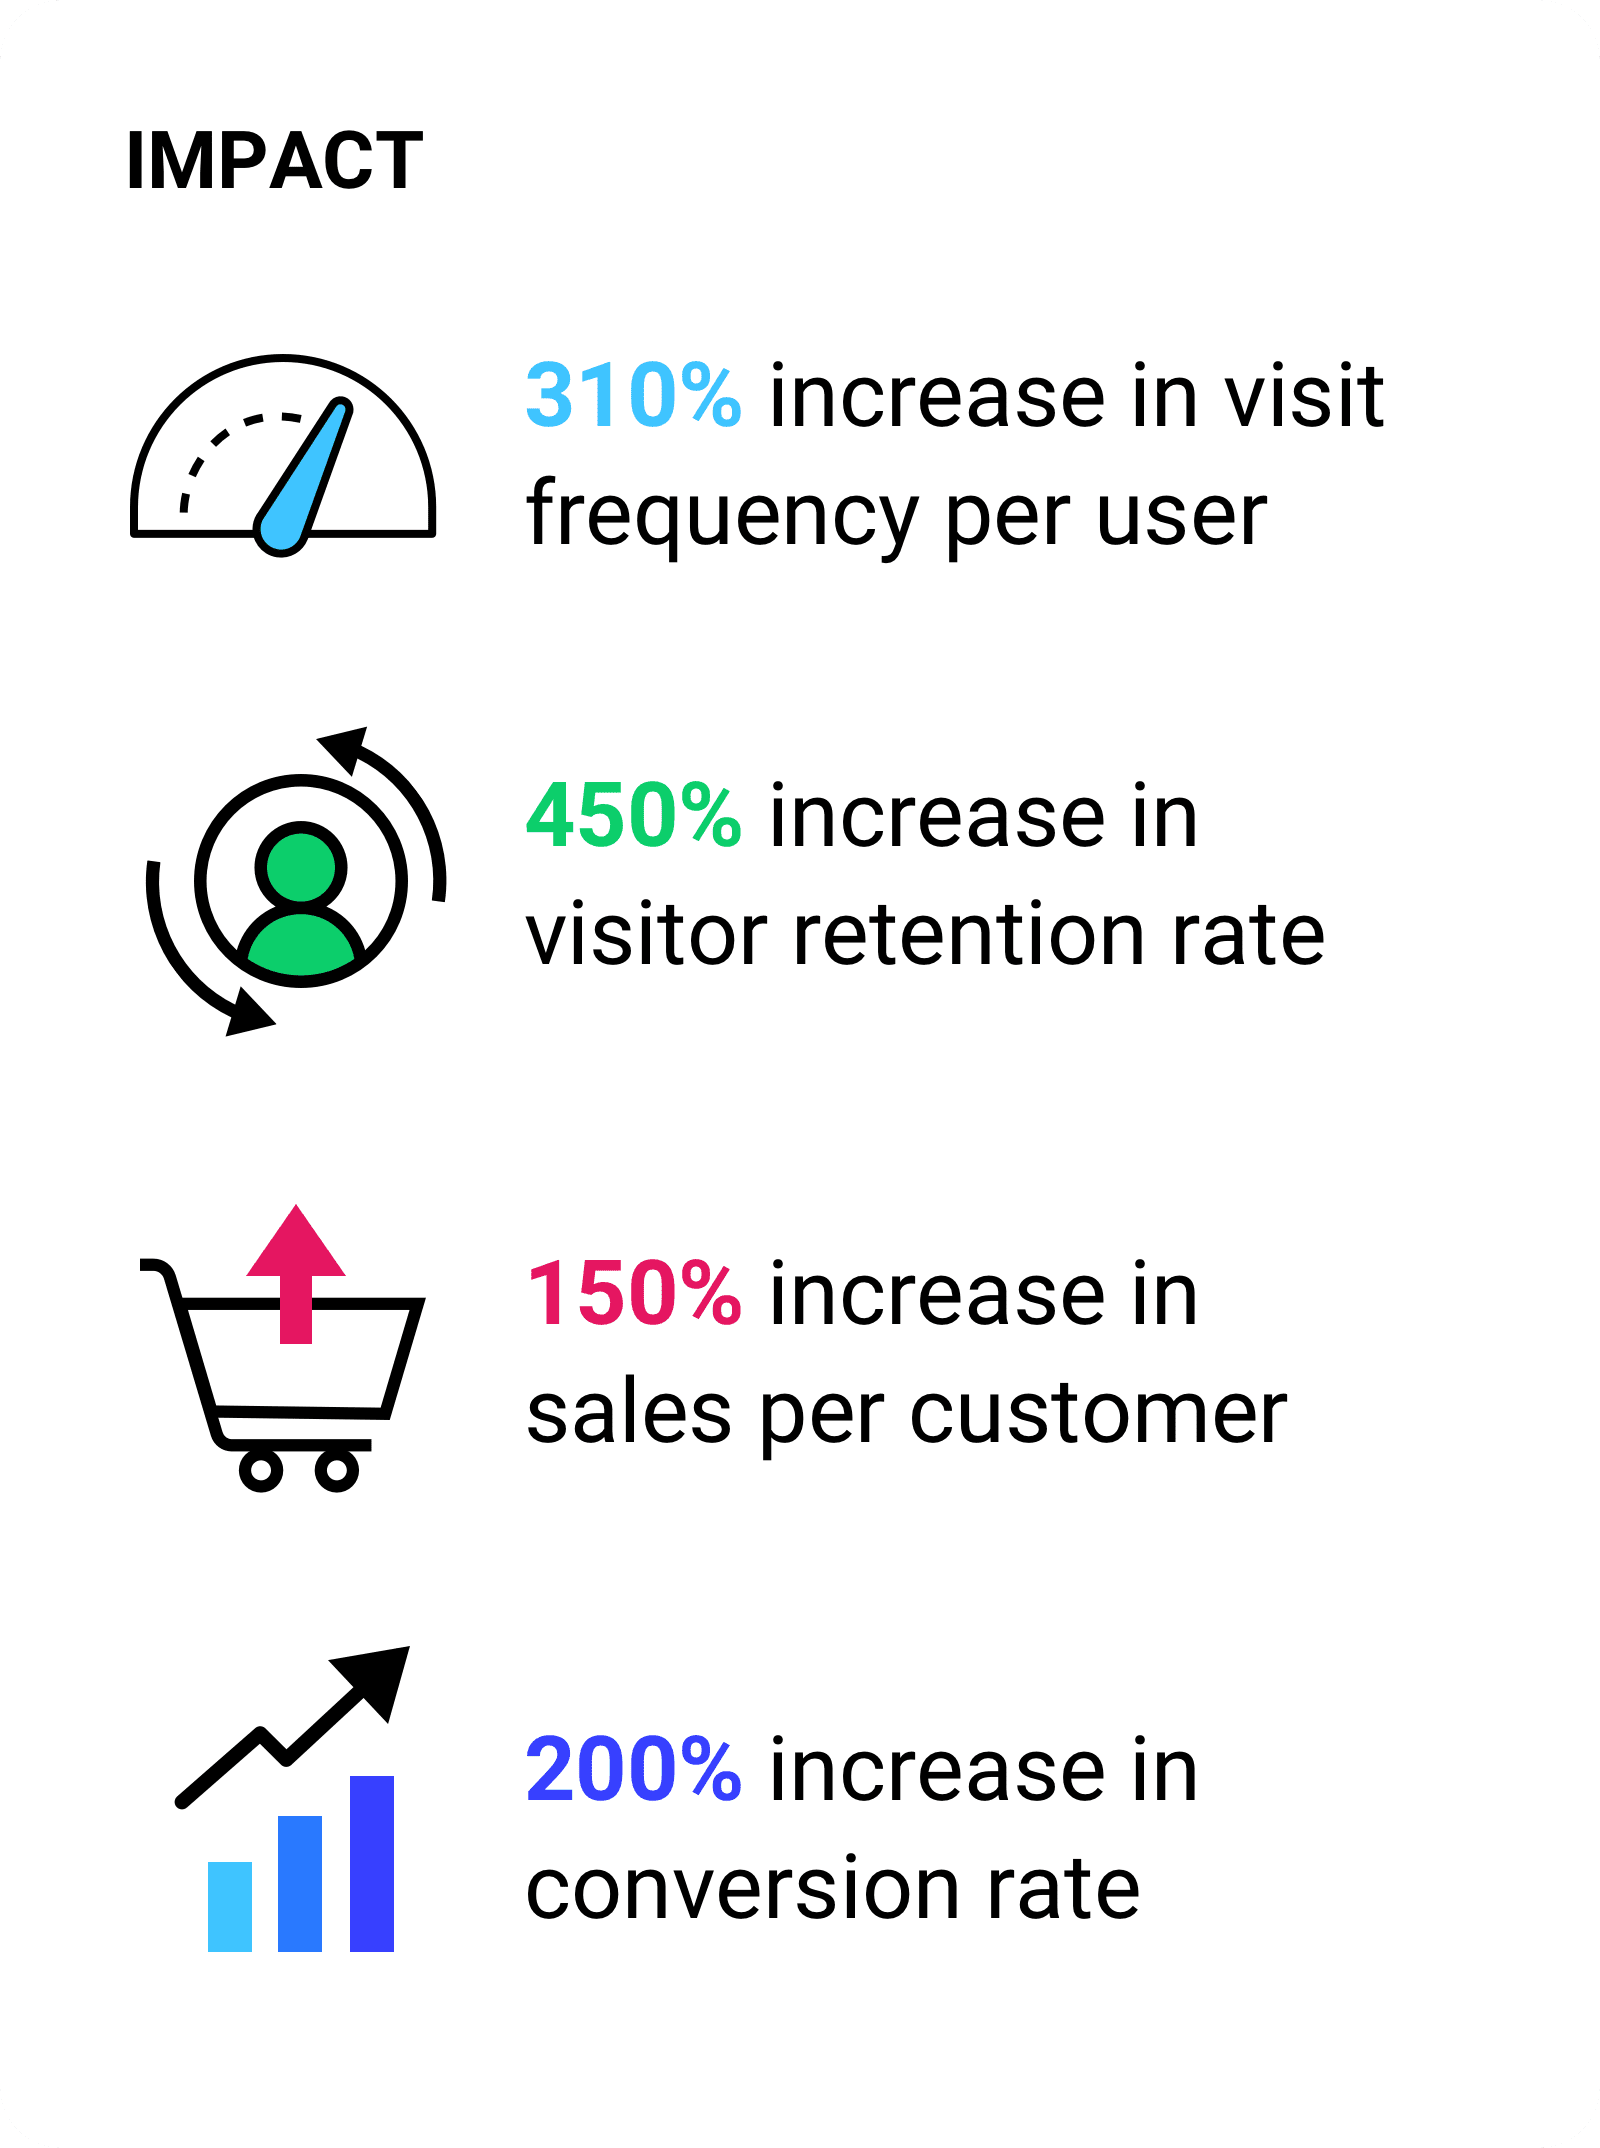 Augmentation de 310% de la fréquence de visite par utilisateur  Augmentation de 450% du taux de fidélisation des visiteurs 150% d&#39;augmentation des ventes par client.Augmentation de 200% du taux de conversion.